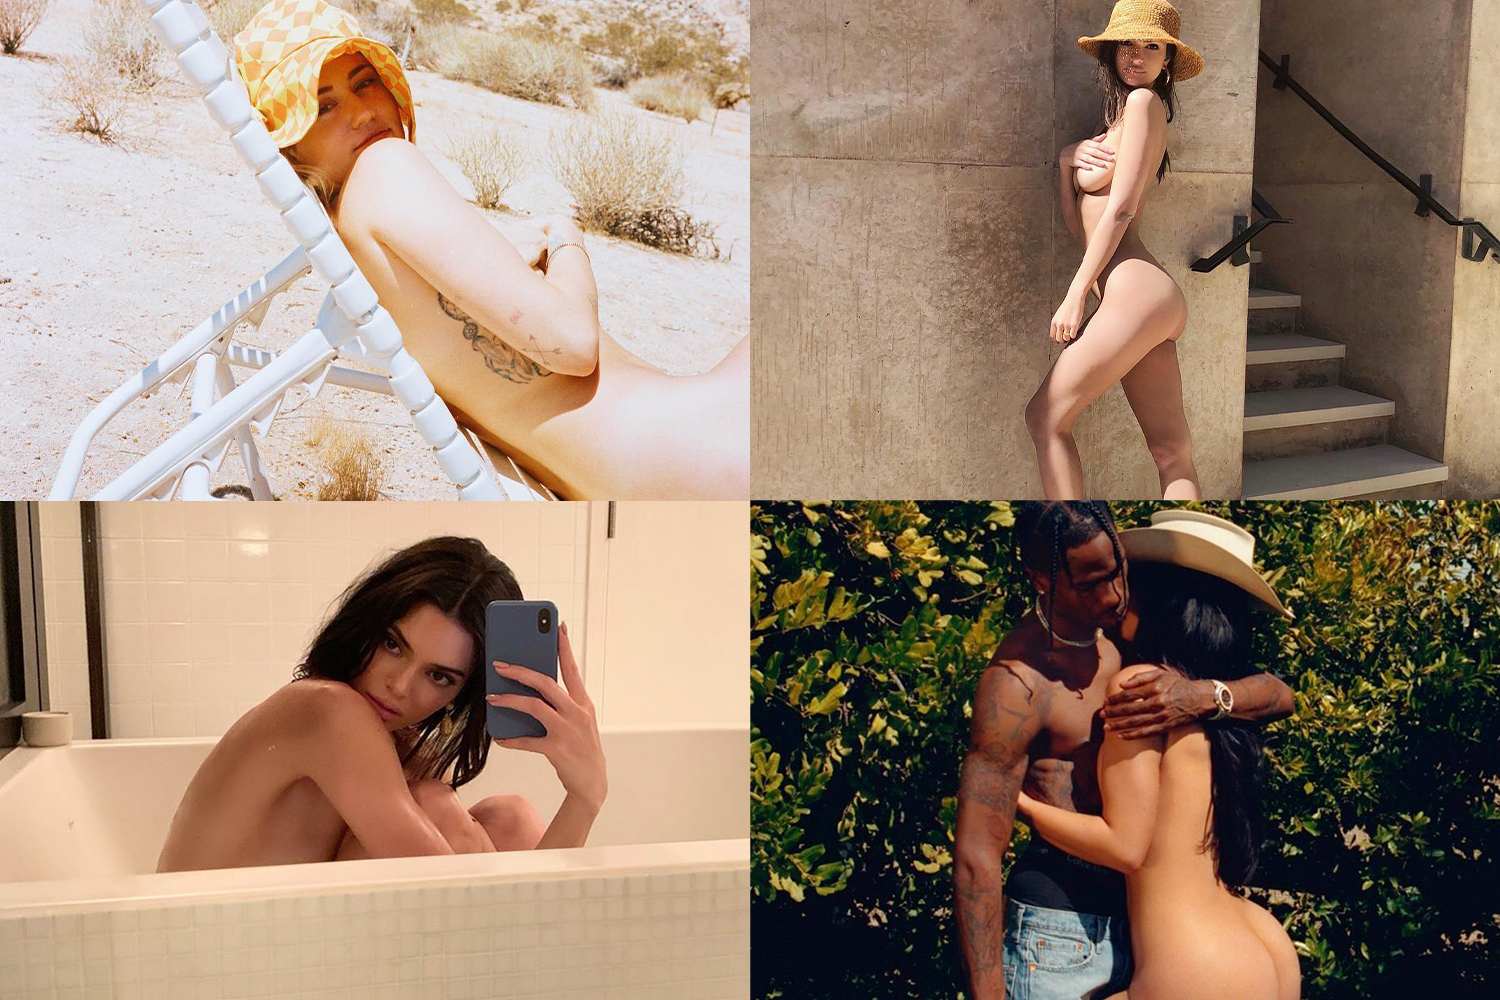 Celebrity instagram nudes